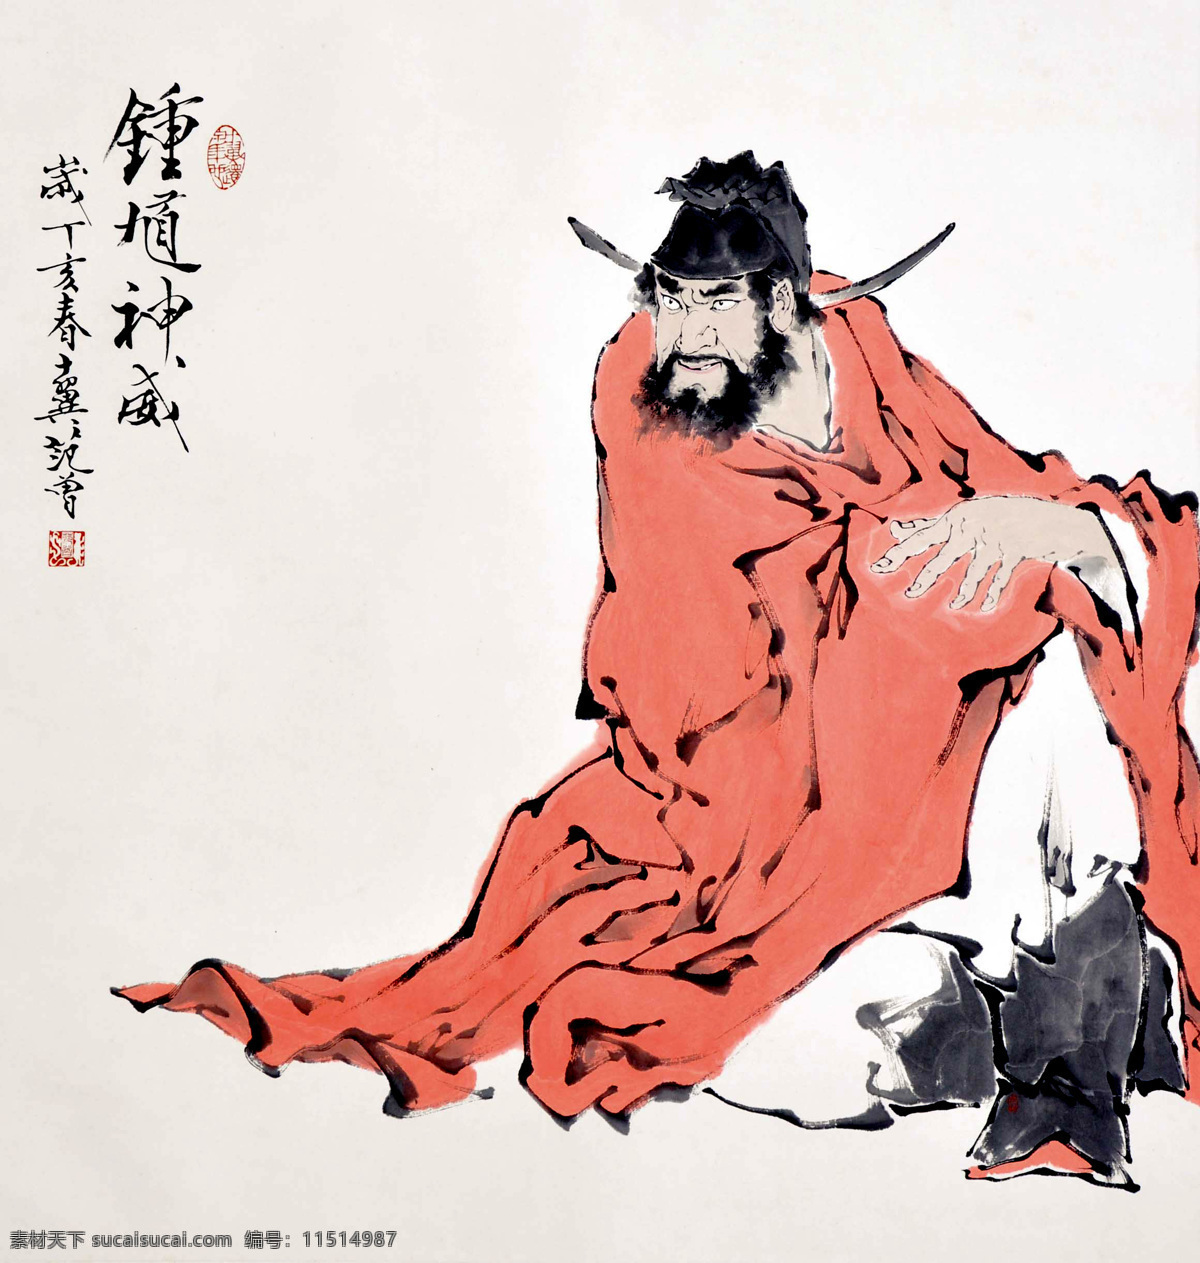 范曾 钟馗 人物写意 水墨画 国画 中国画 传统画 名家 绘画 艺术 文化艺术 绘画书法